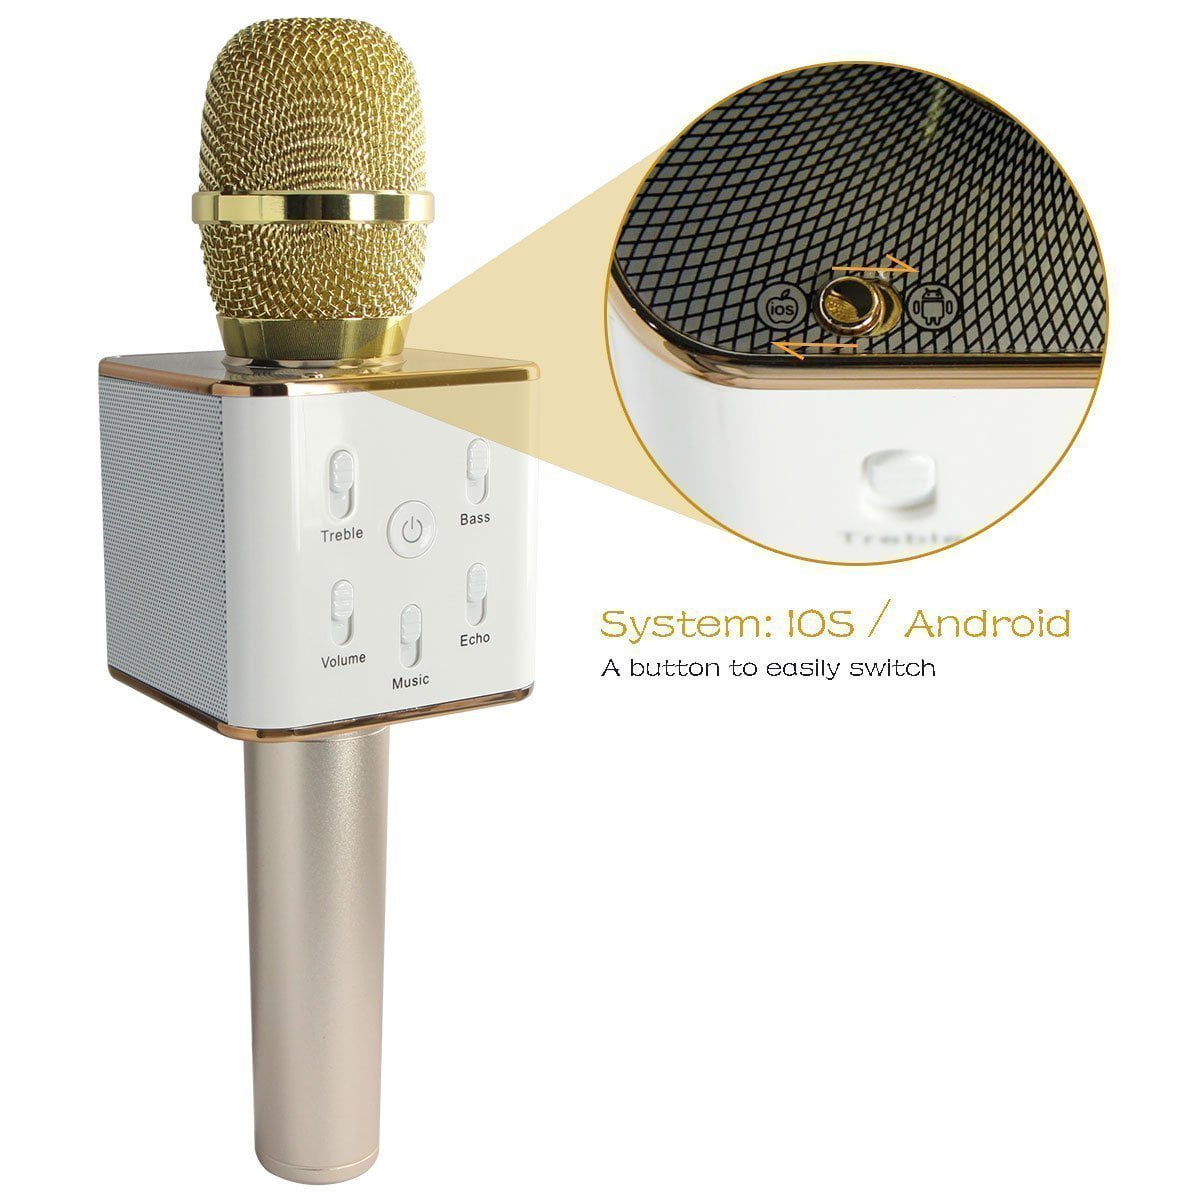 Portable W ireless Karaoke Microphone,Built-in B luetooth Speaker K9 